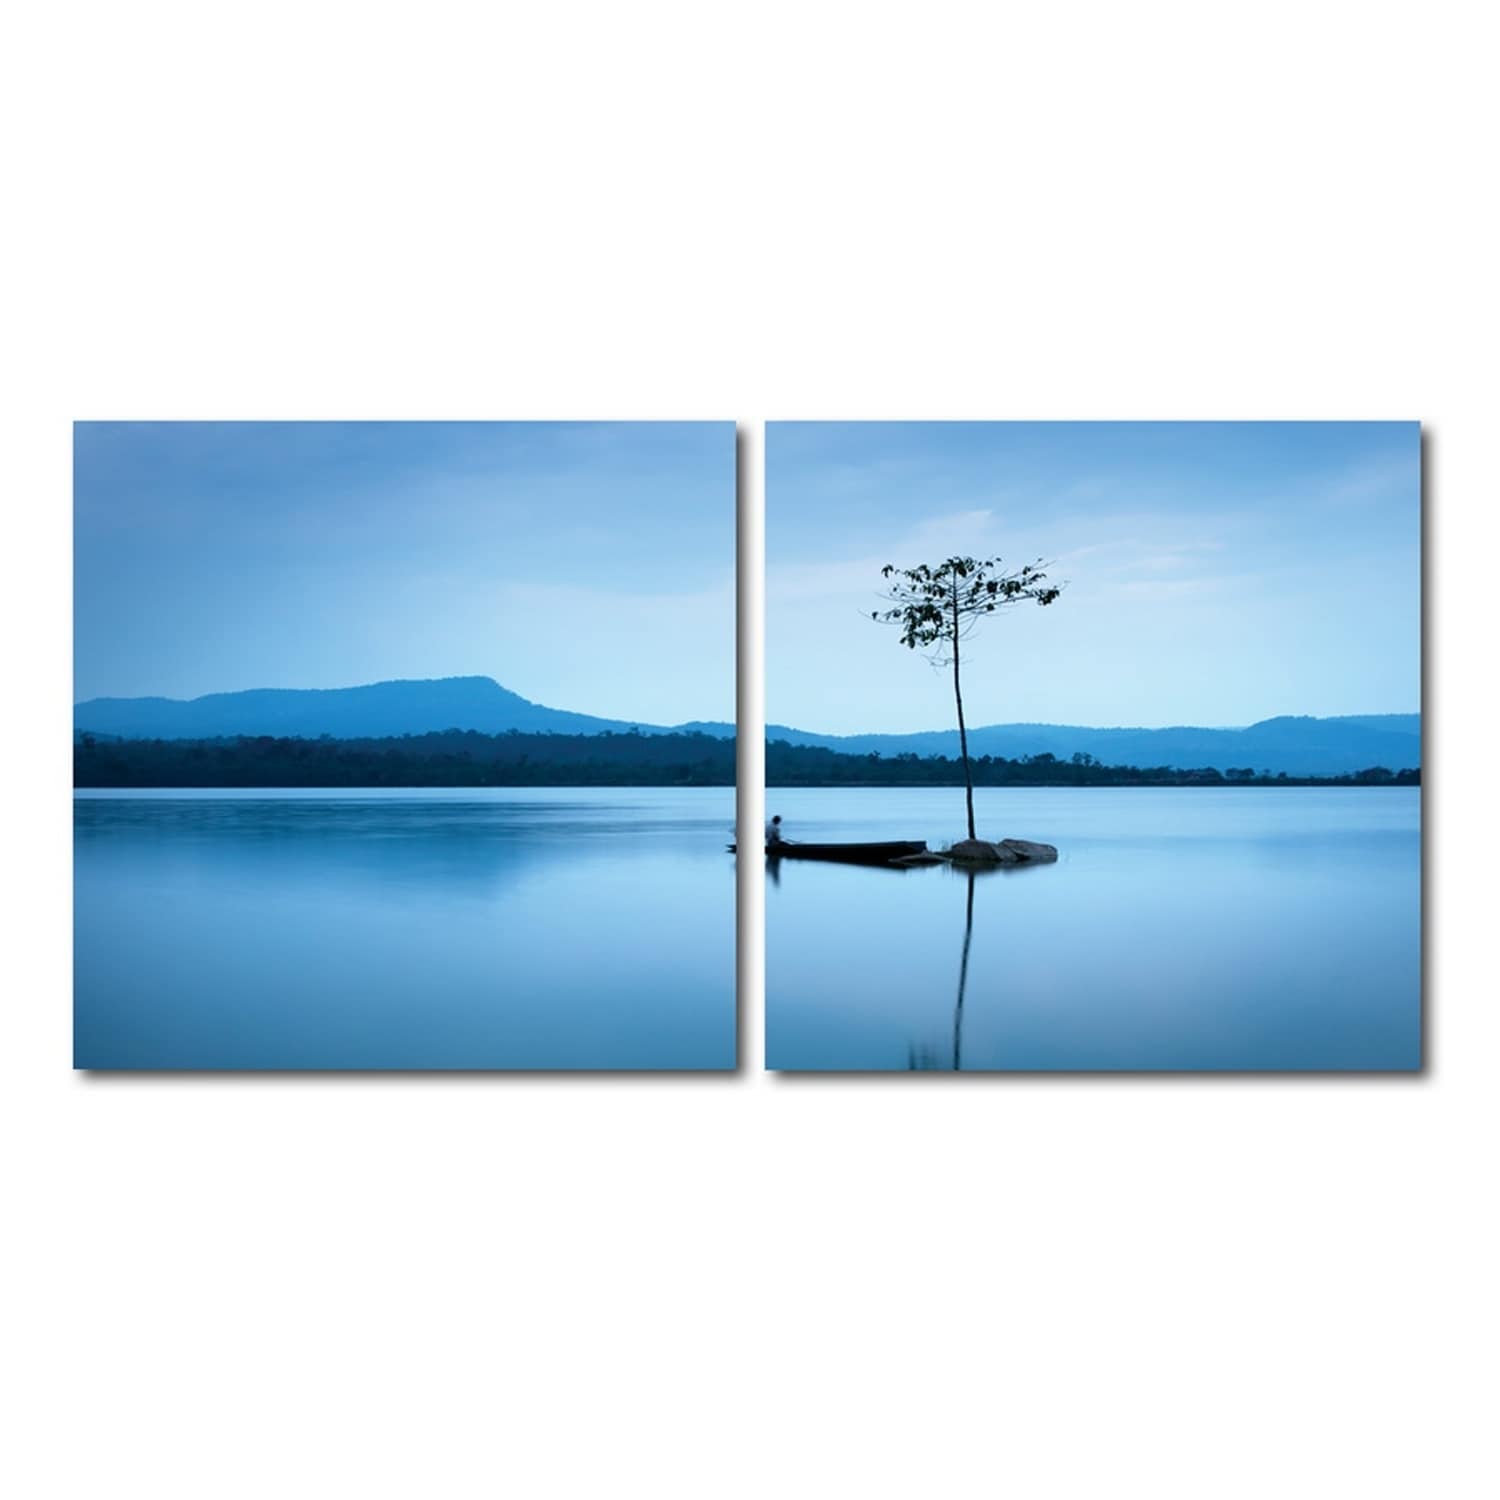 Акрил деревья озеро. Модульная картина kartina Style умиротворение воды. Покой 40 телефон